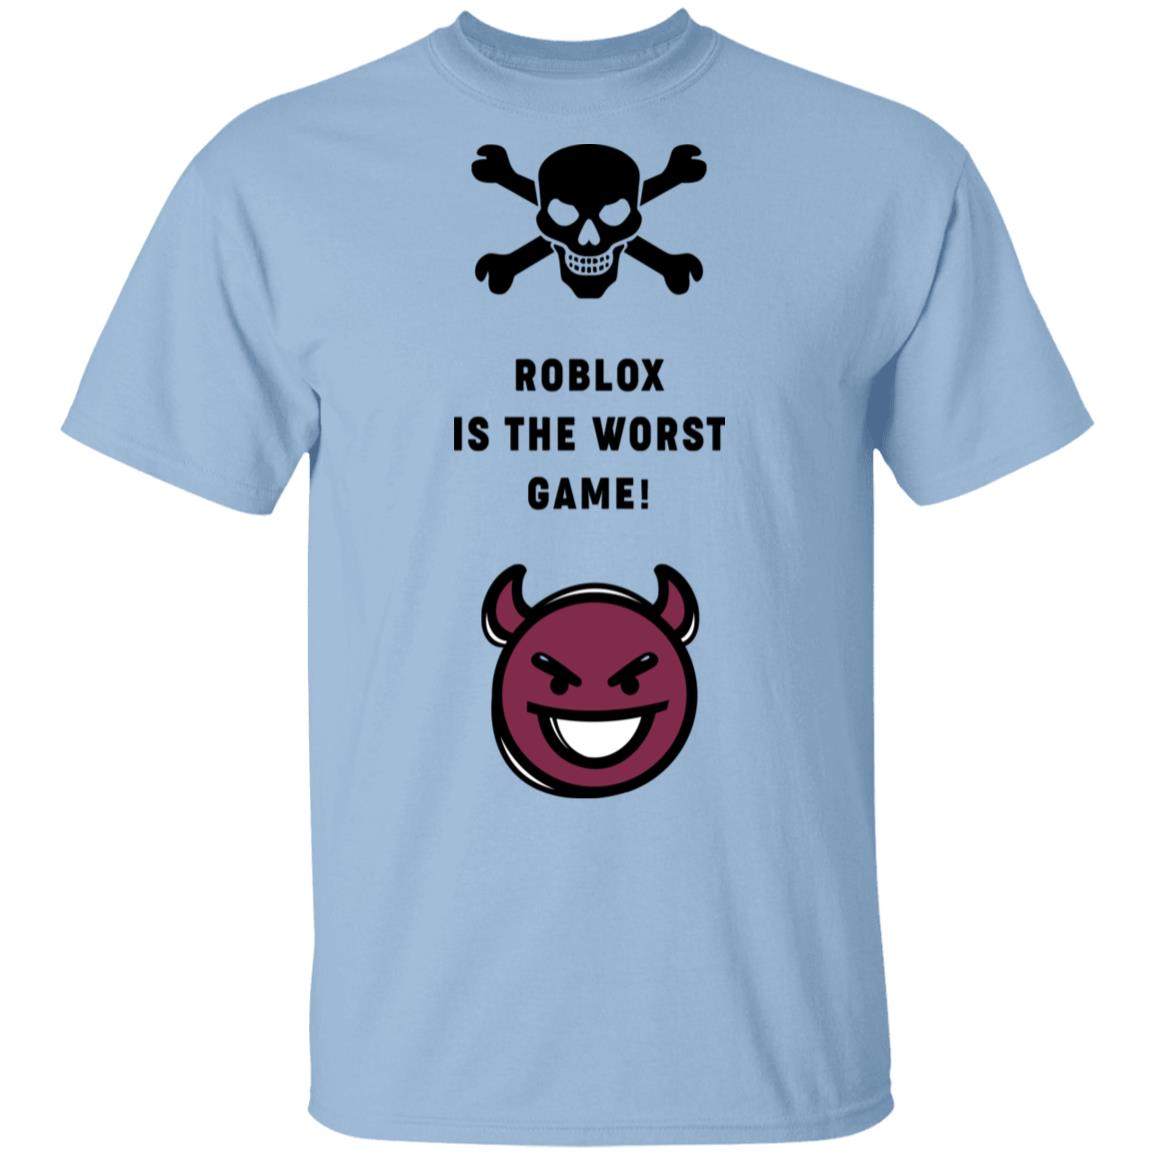 New Shirt Roblox Logo Men & Women T Shirt Usa Size S-5XL